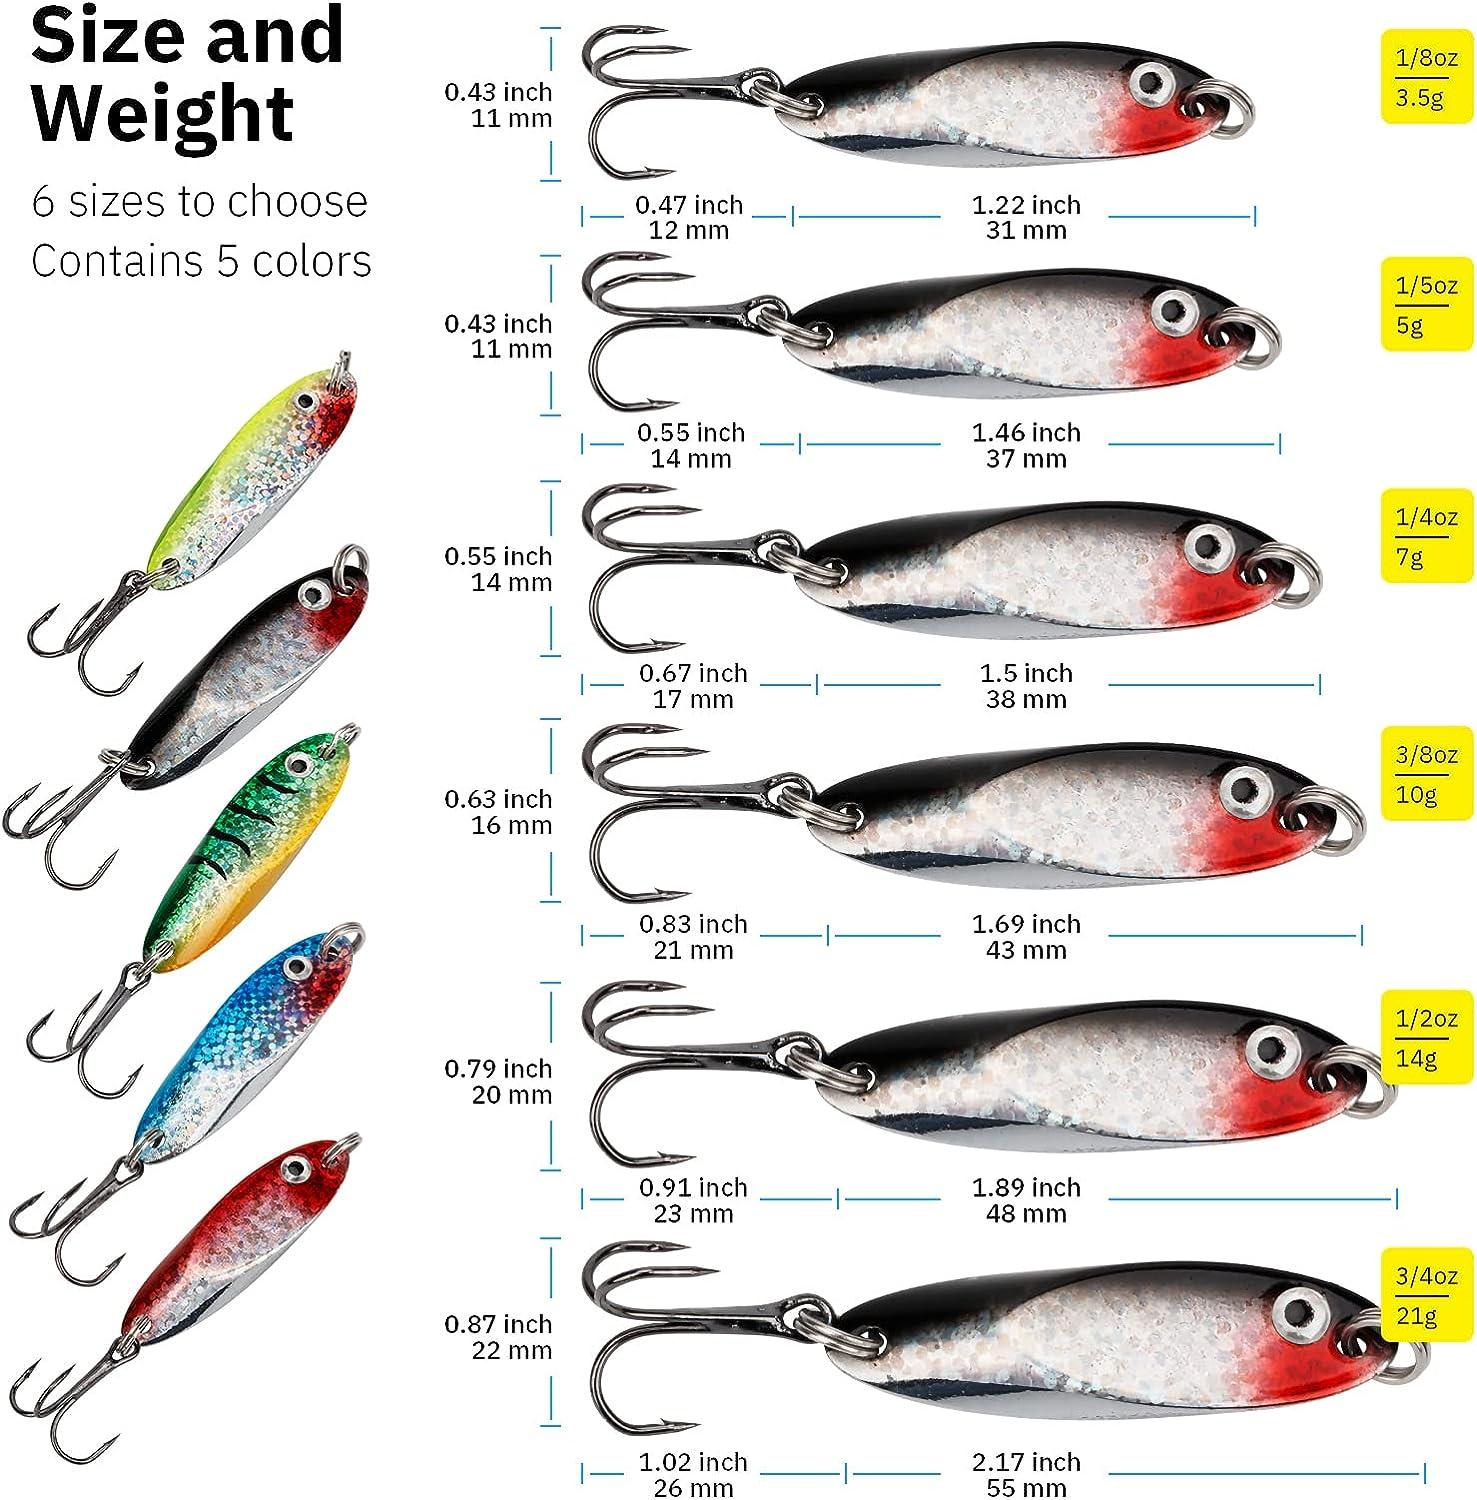 THKFISH Fishing Lures Fishing Spoons Trout Lures Saltwater Spoon Lures Casting  Spoon for Trout Bass Pike Walleye 1/8oz 1/5oz 1/4oz 3/8oz 1/2oz 3/4oz 5pcs  Color 1# 3/4oz(21g)* 5pcs